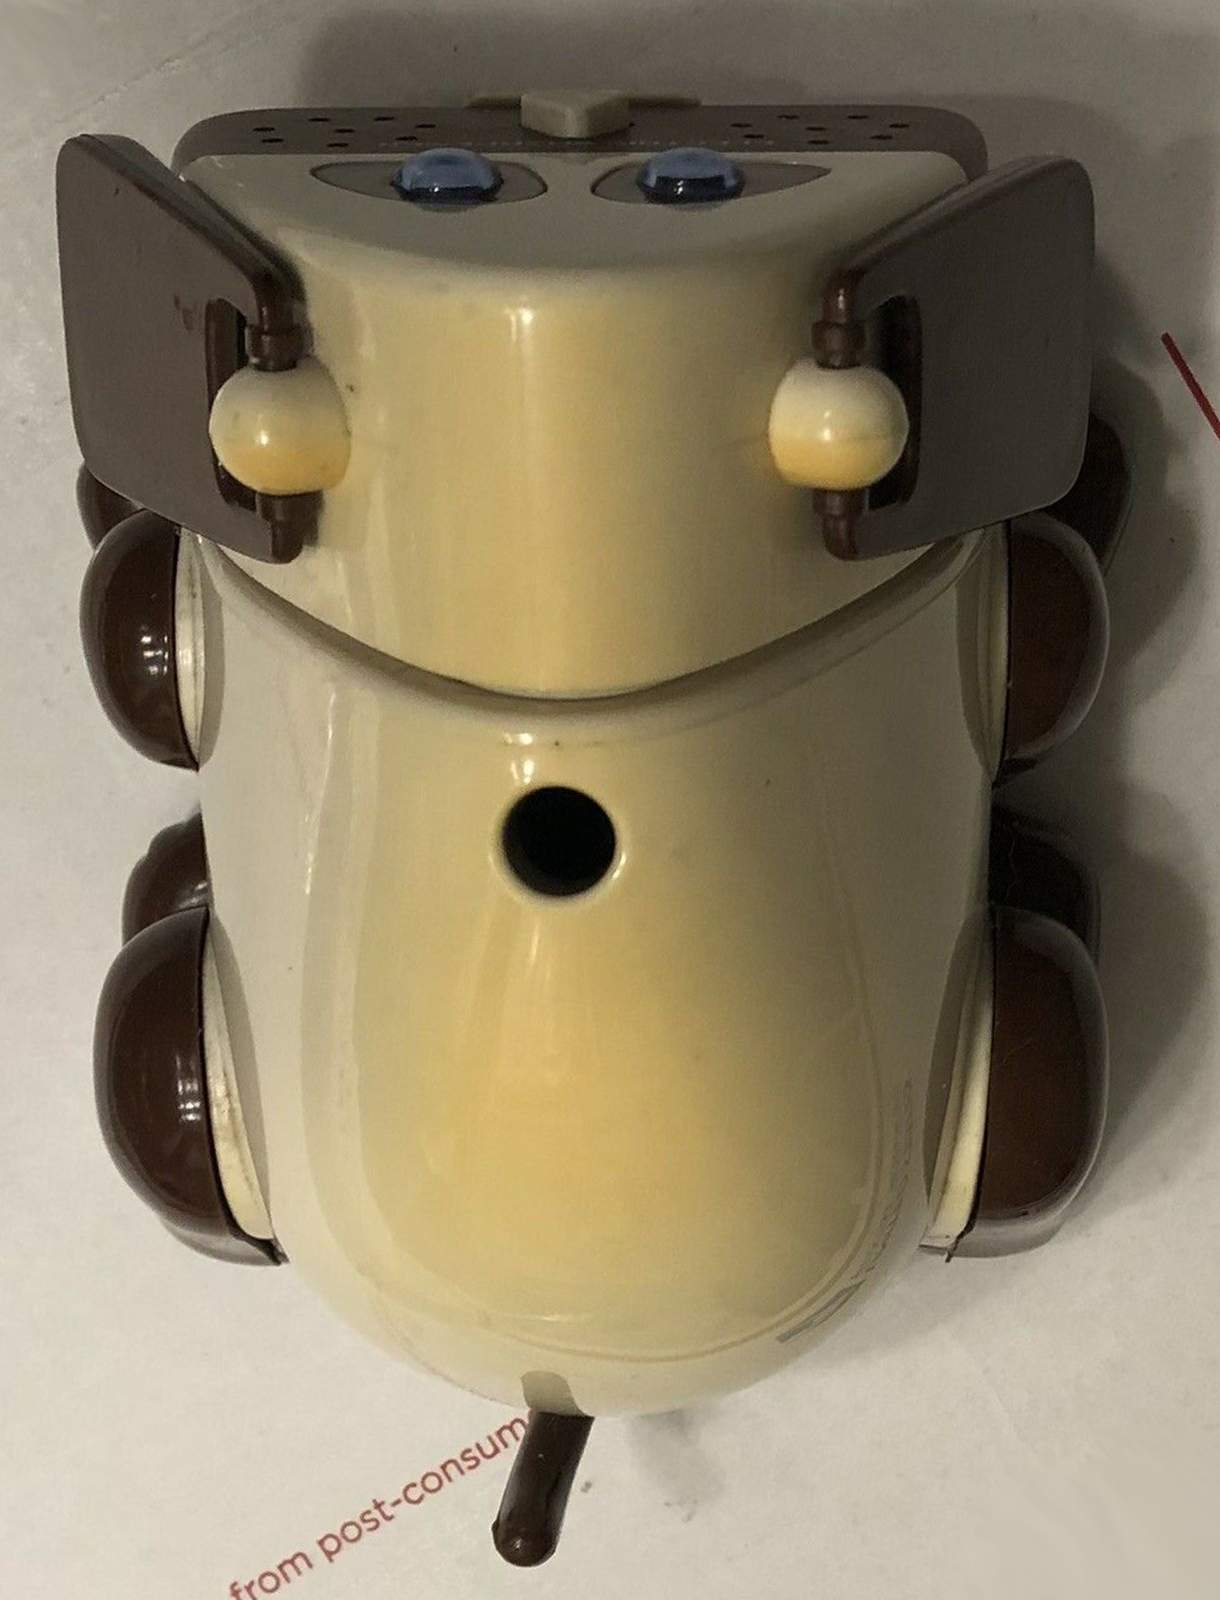 Spotbot Sharpener Robot